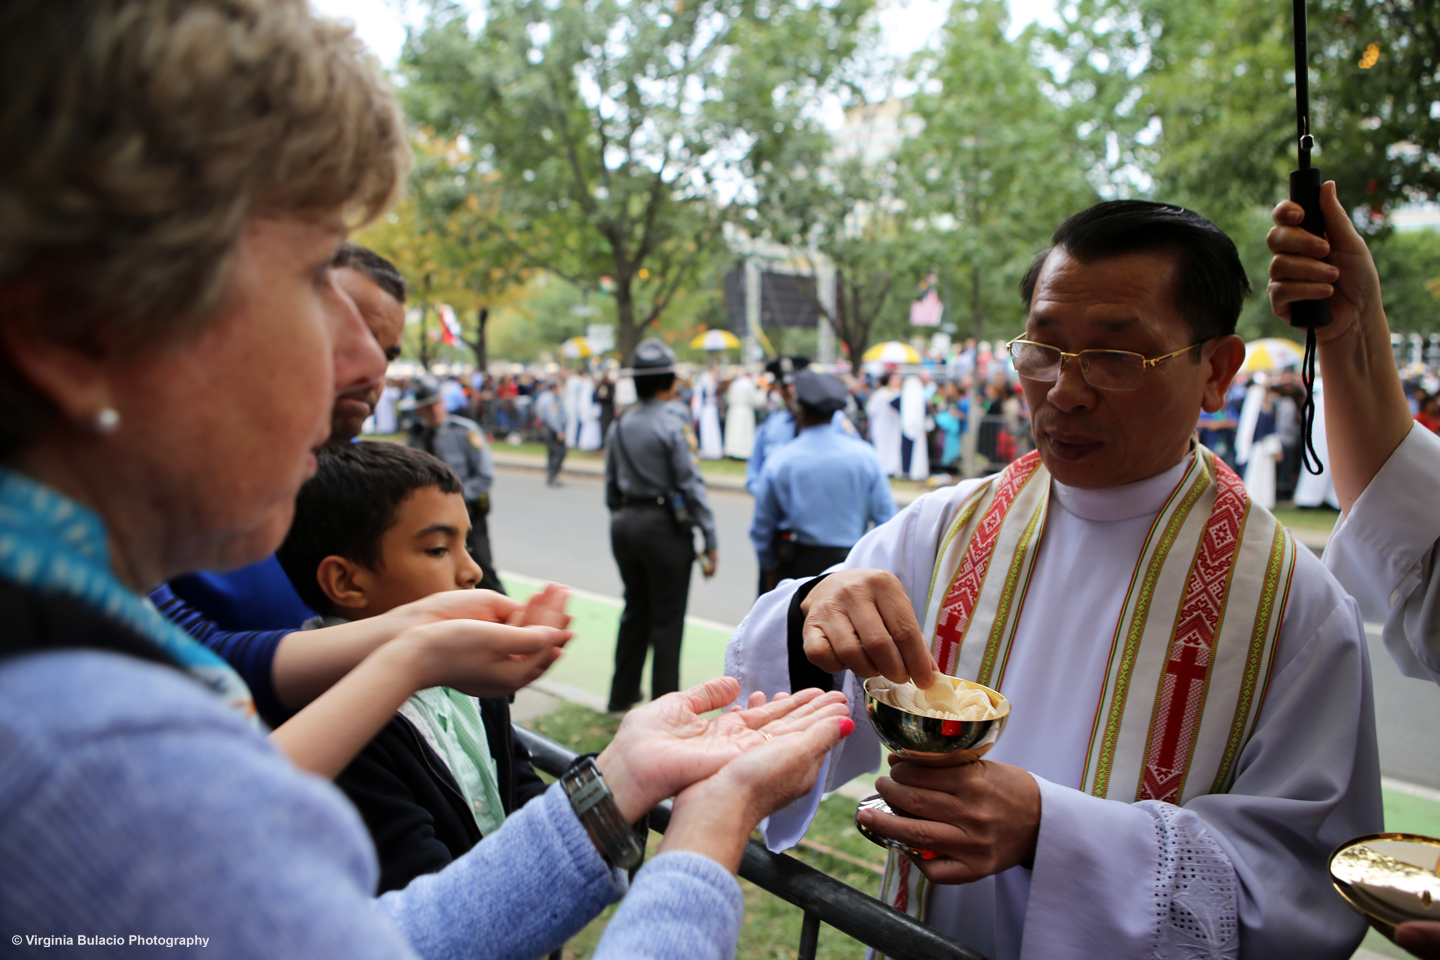   Un sacerdote distribuyendo entre la multitud hostias, o pan de comunión.&nbsp;  